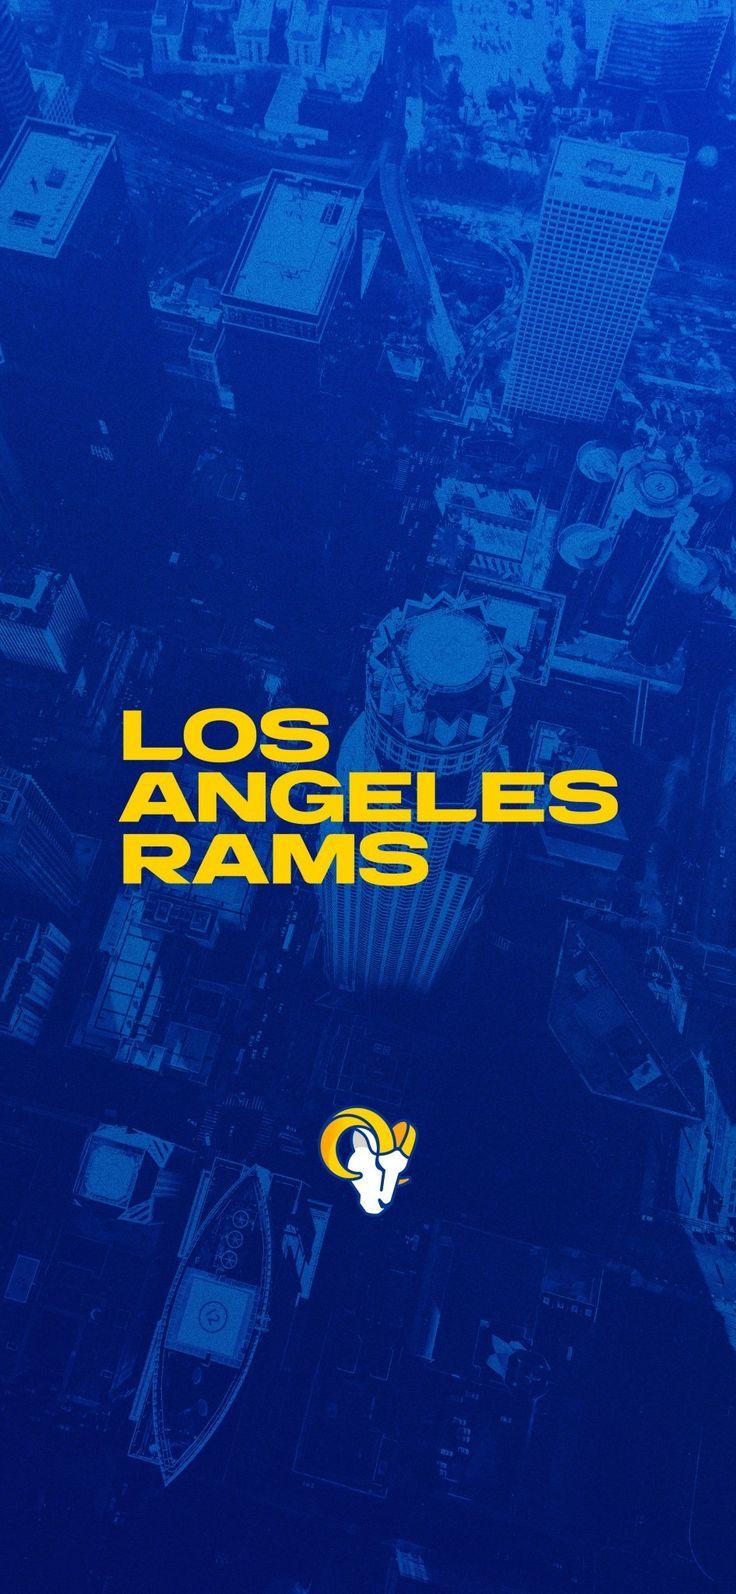 Los Angeles Rams ideas. los angeles rams, rams football, la rams